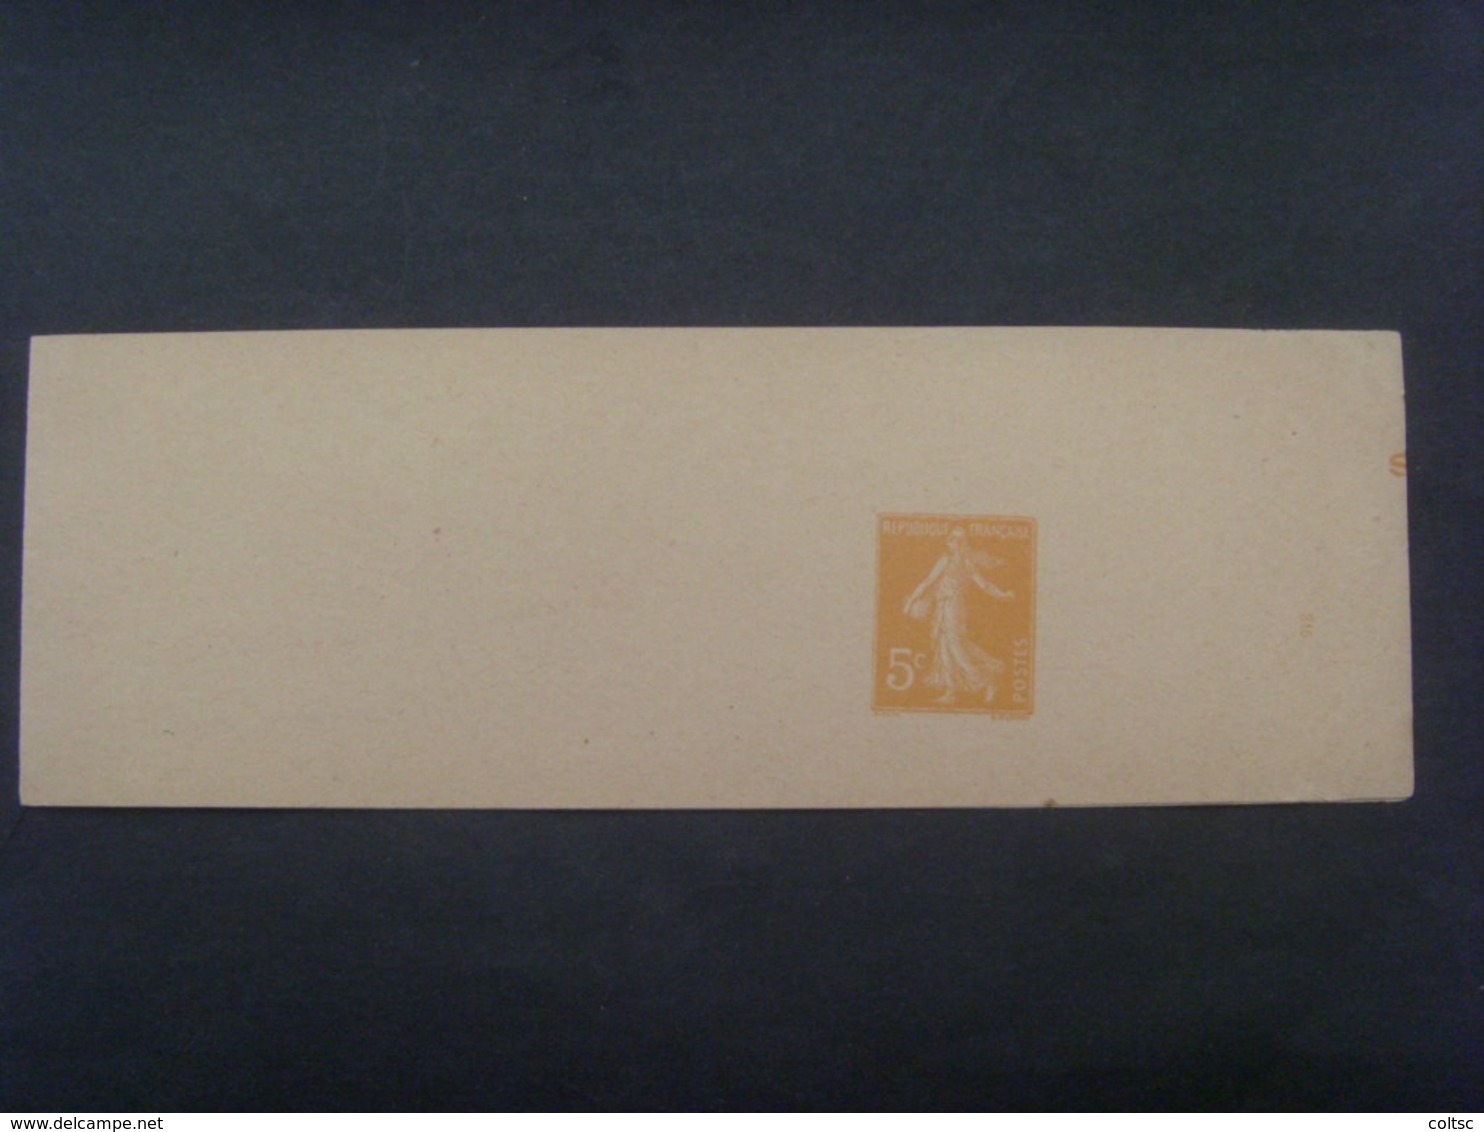 18043- Bande Journal Semeuse Camée 5 C Avec Lettre De Contrôle S, Date 315, N - Bandes Pour Journaux